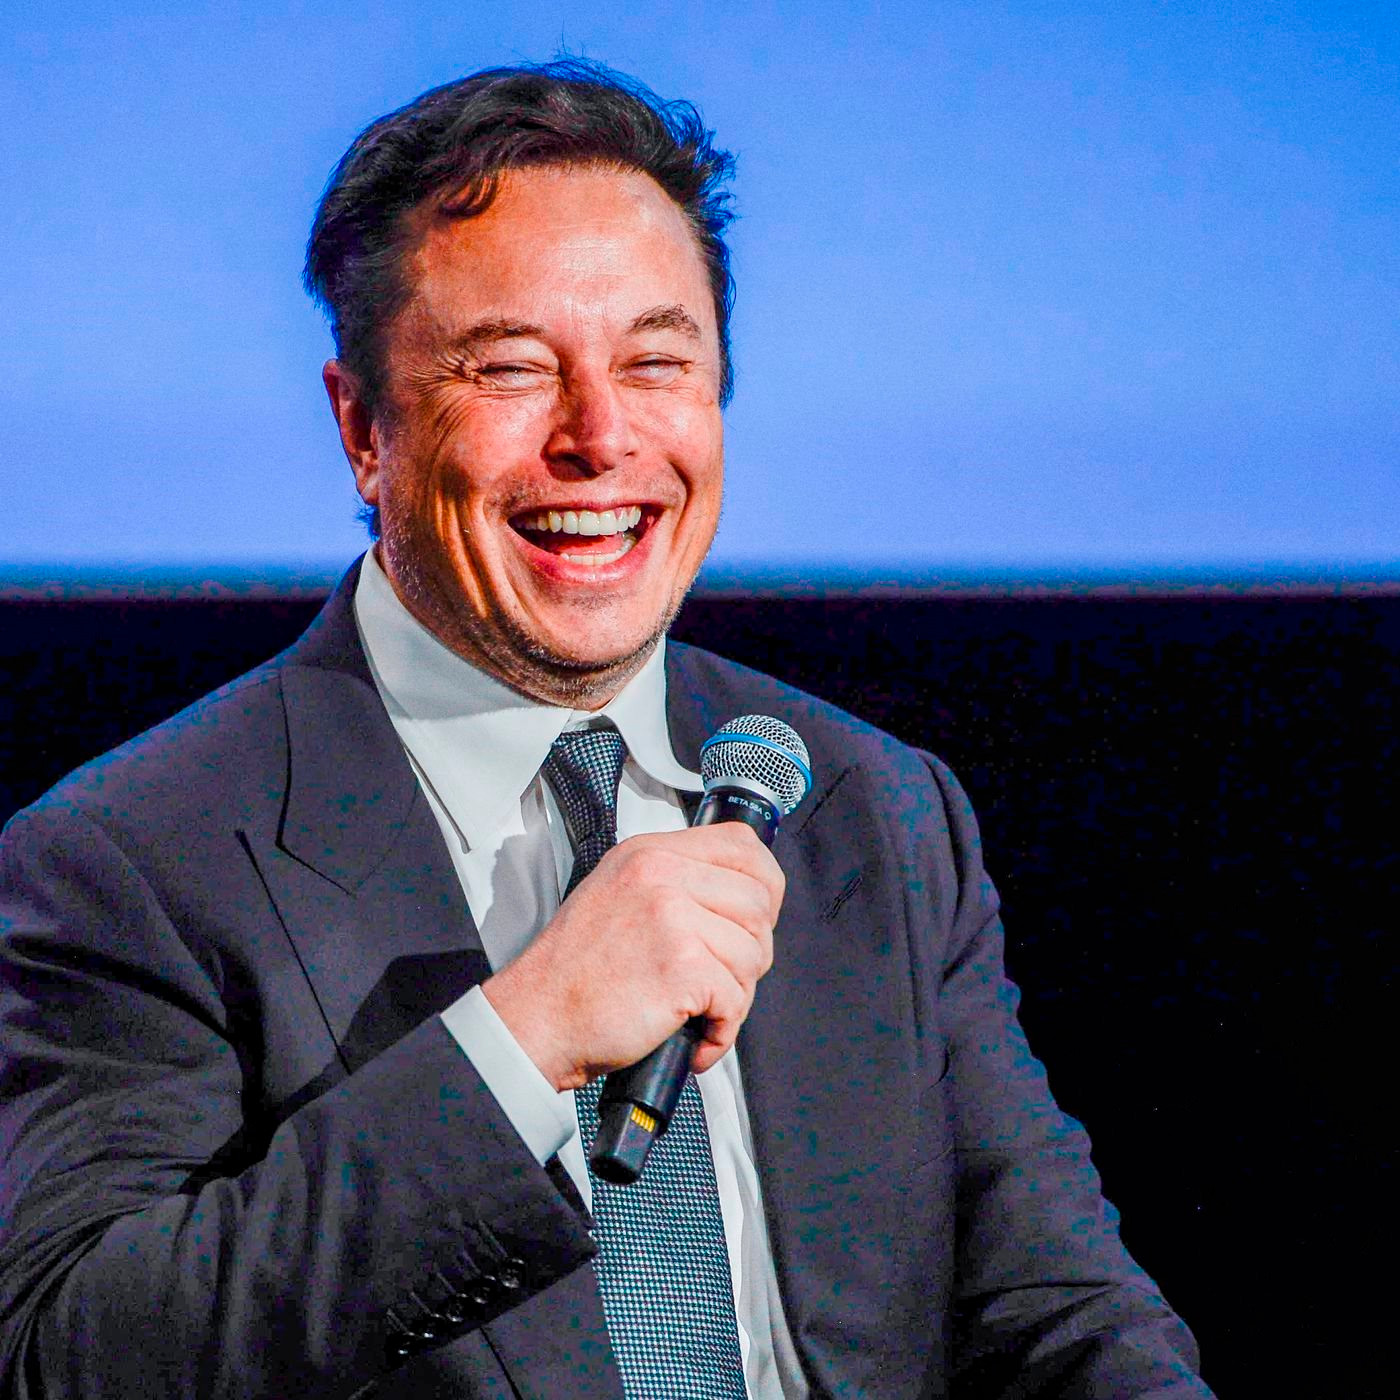 Elon Musk bí mật phát triển trí thông minh nhân tạo dù vừa kêu gọi thế giới tạm ngừng phát triển công nghệ này - Ảnh 1.